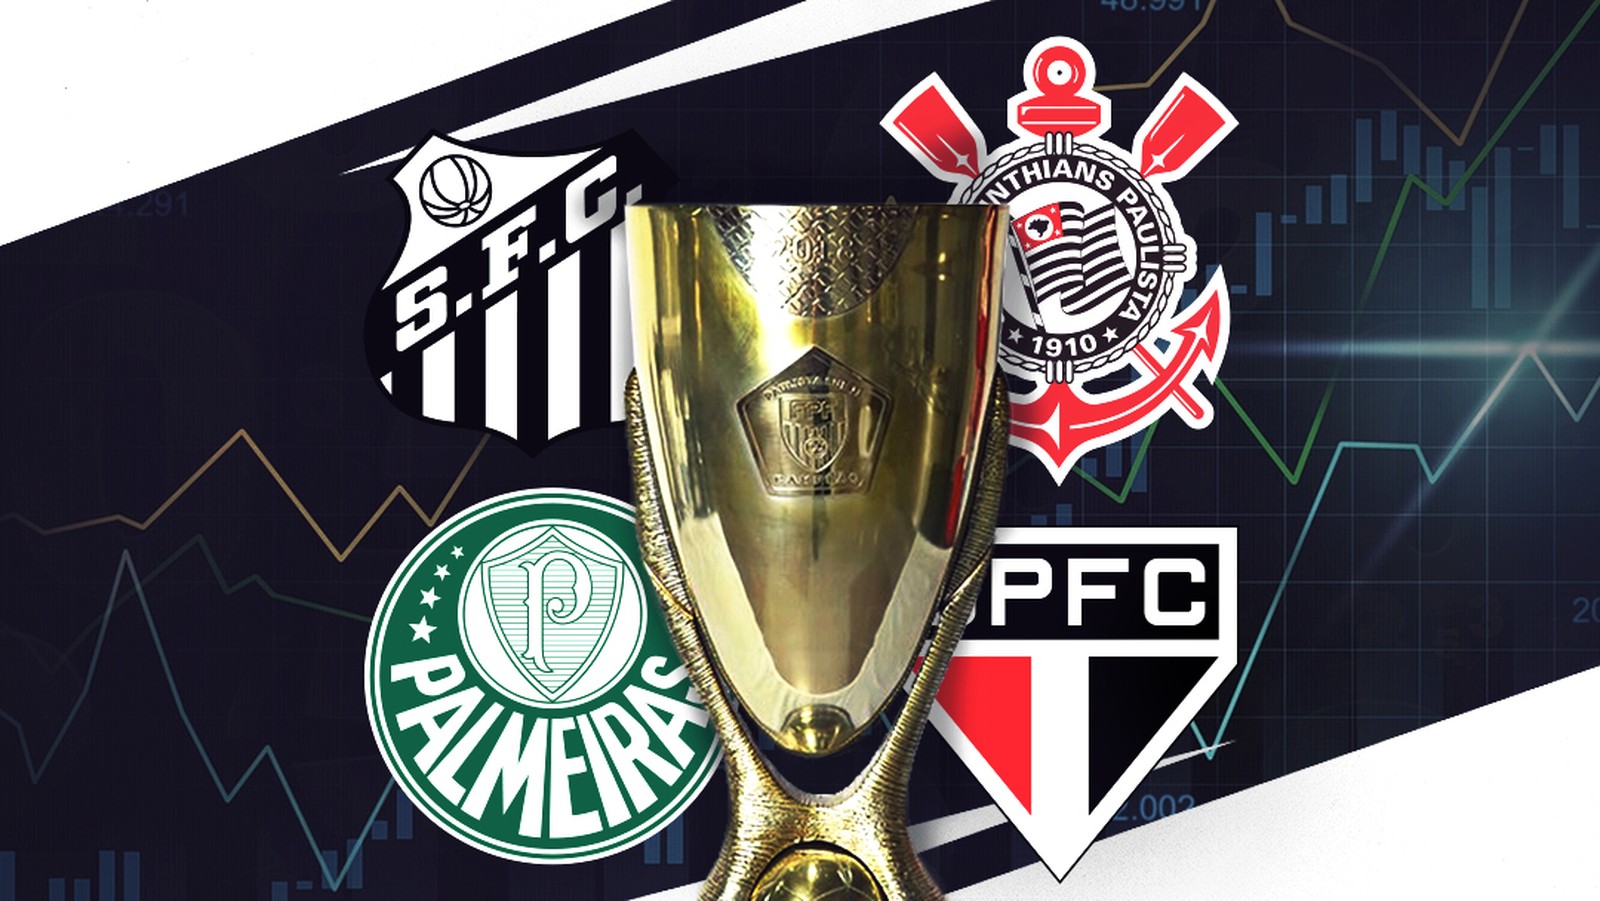 São Paulo se isola como 7° time com mais títulos nacionais; veja